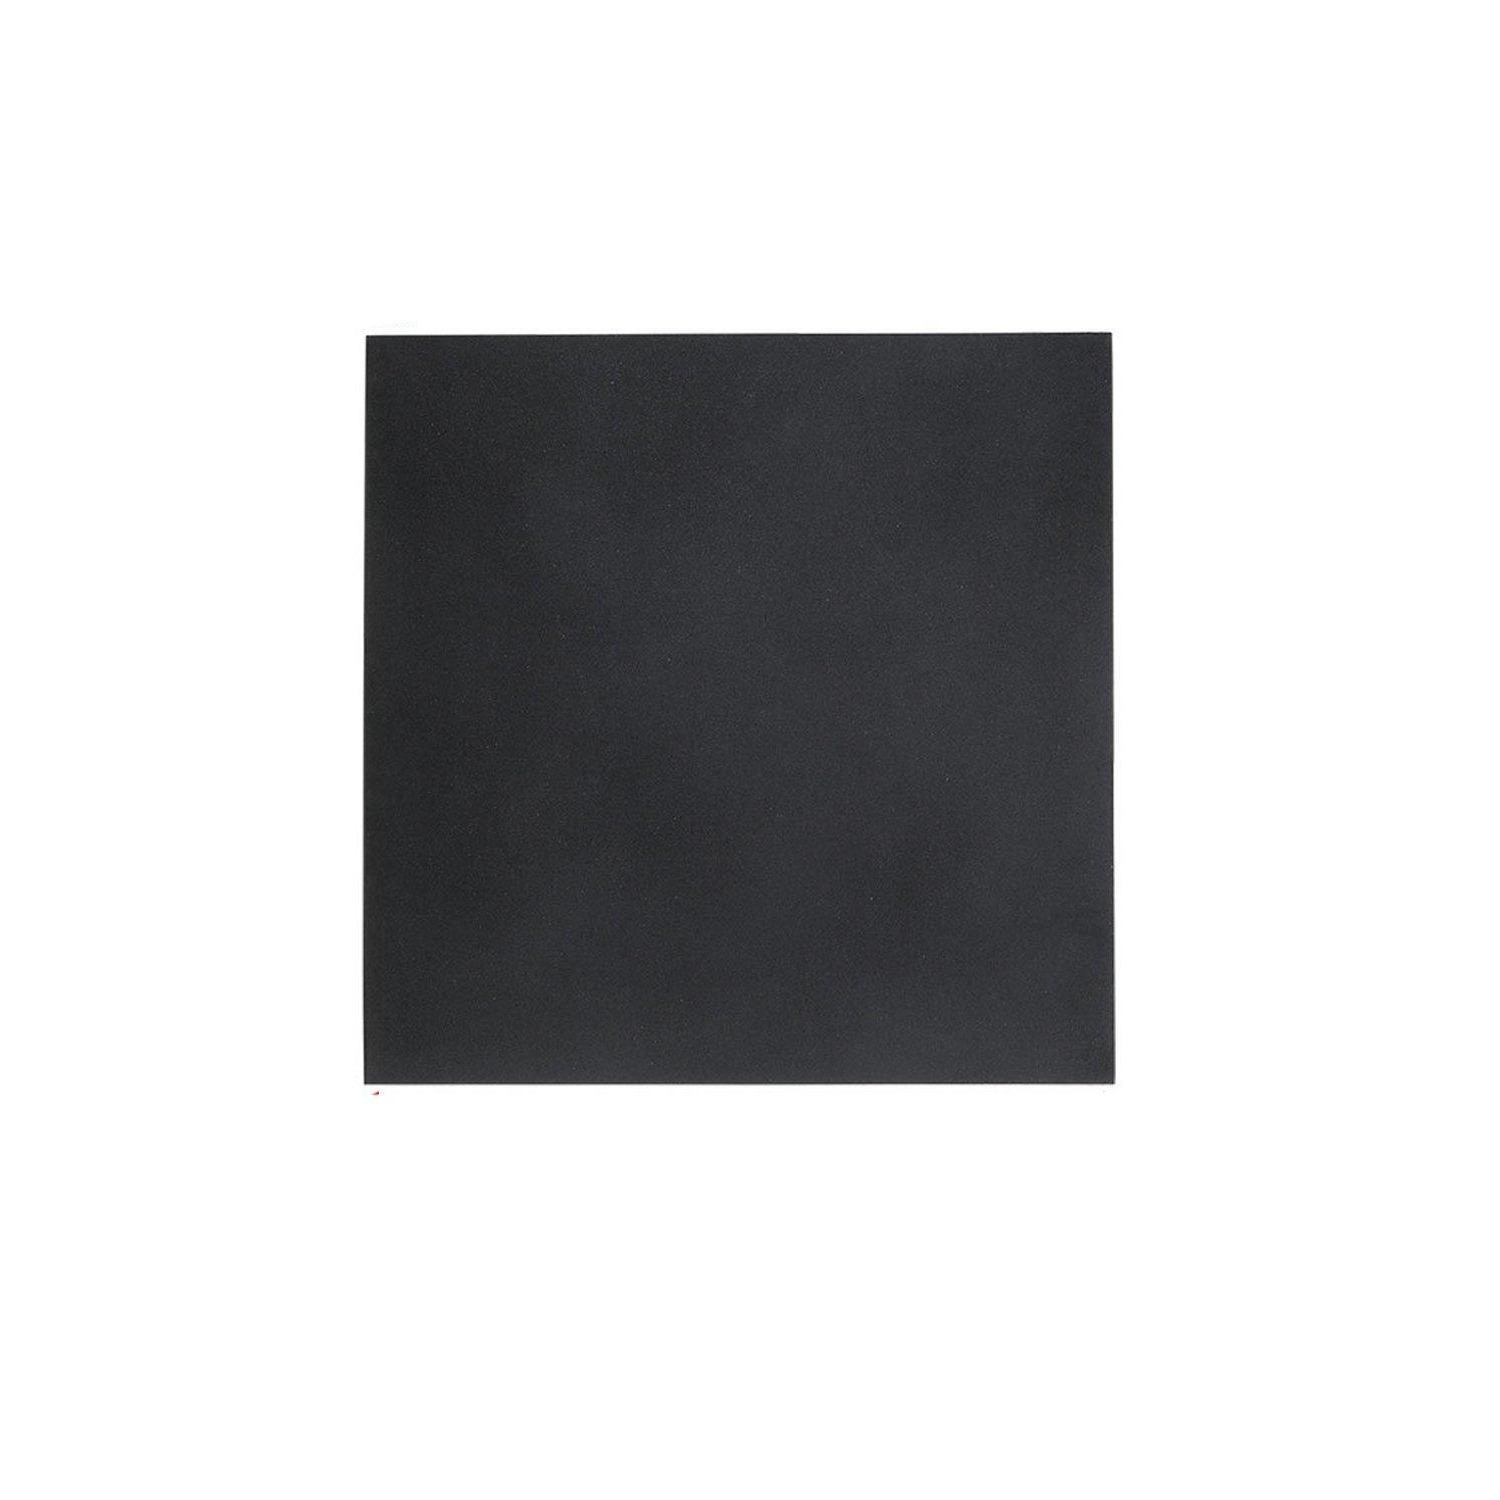 100 cm W x 100 cm D x 0.15 cm H Black Heavy Duty Rubber Mat - image 1